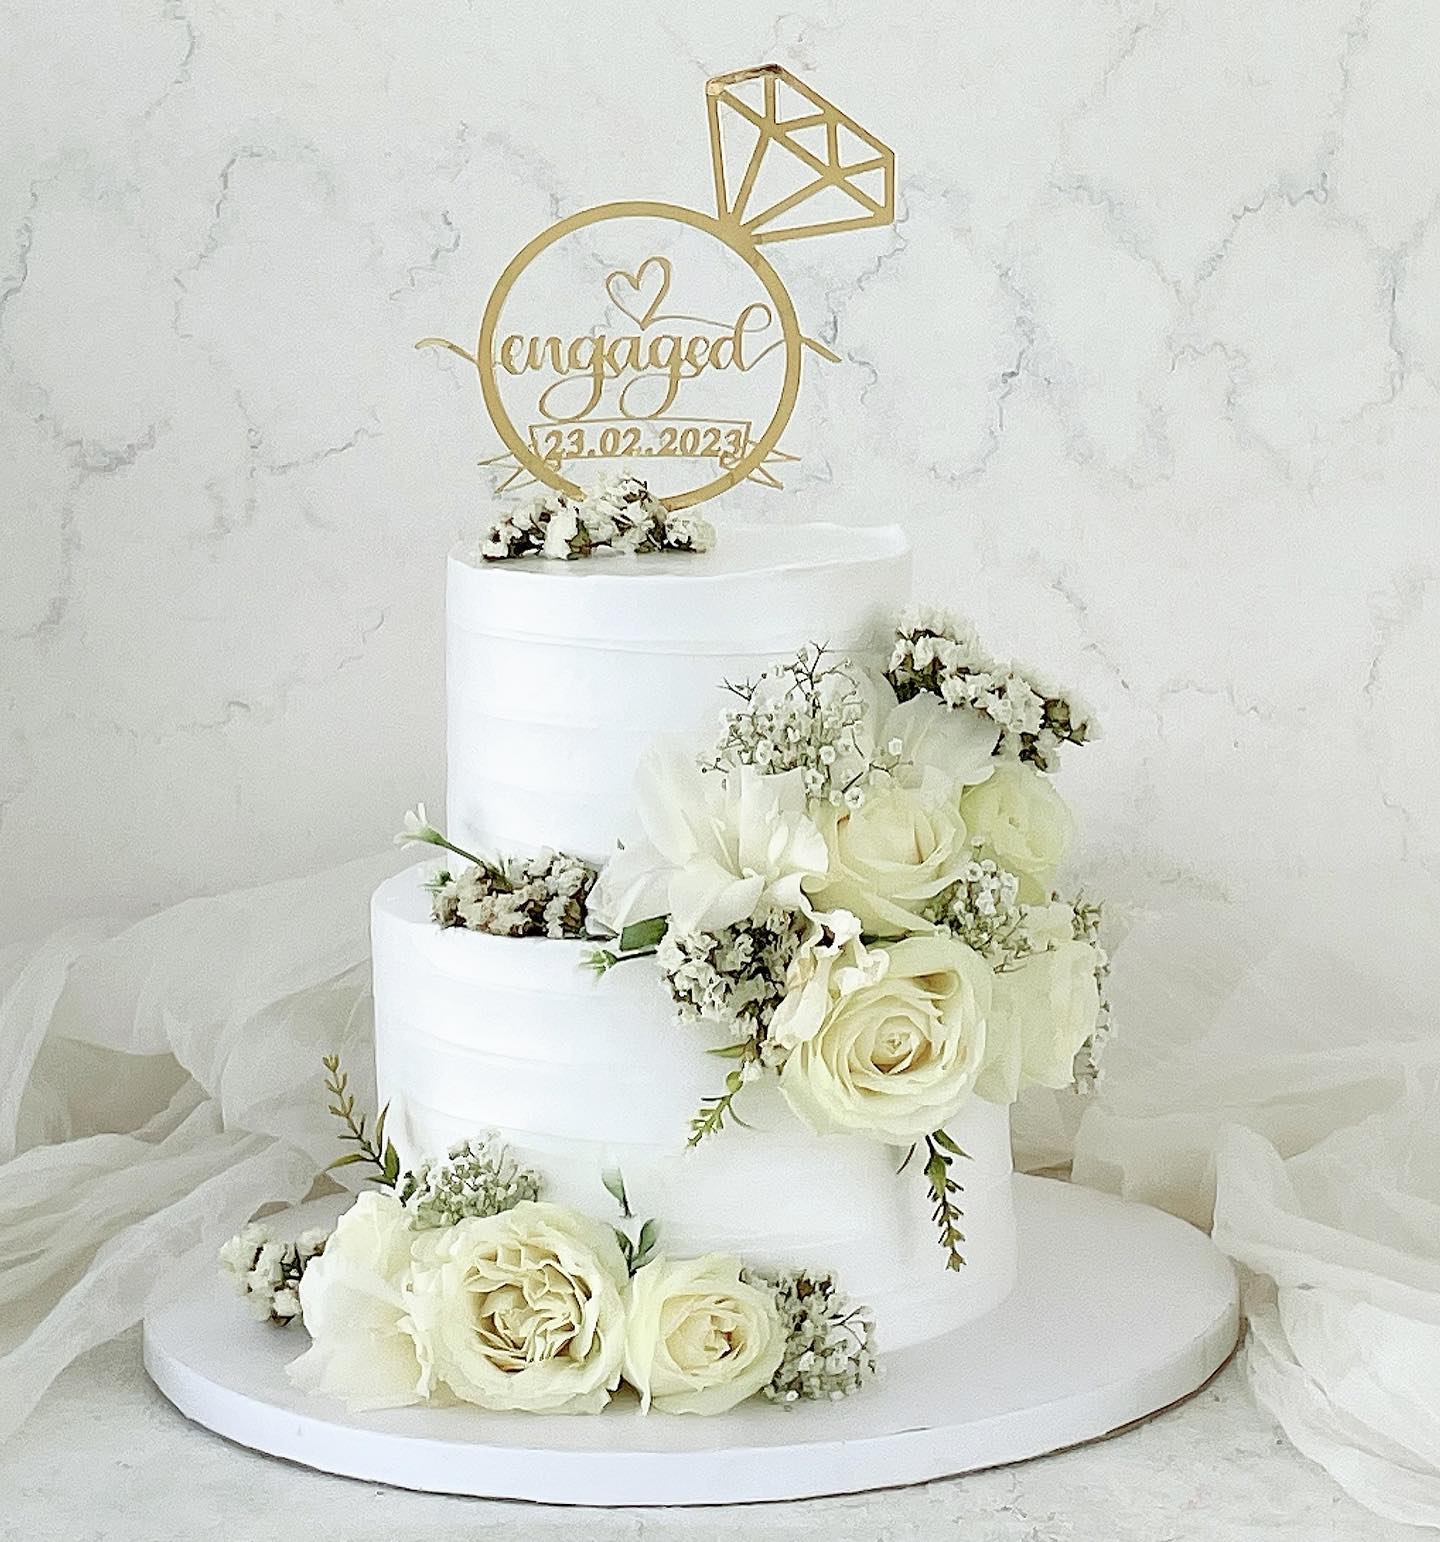 Ring wedding cake / Engagement cake / reception cake - Cake Square Chennai  | Cake Shop in Chennai